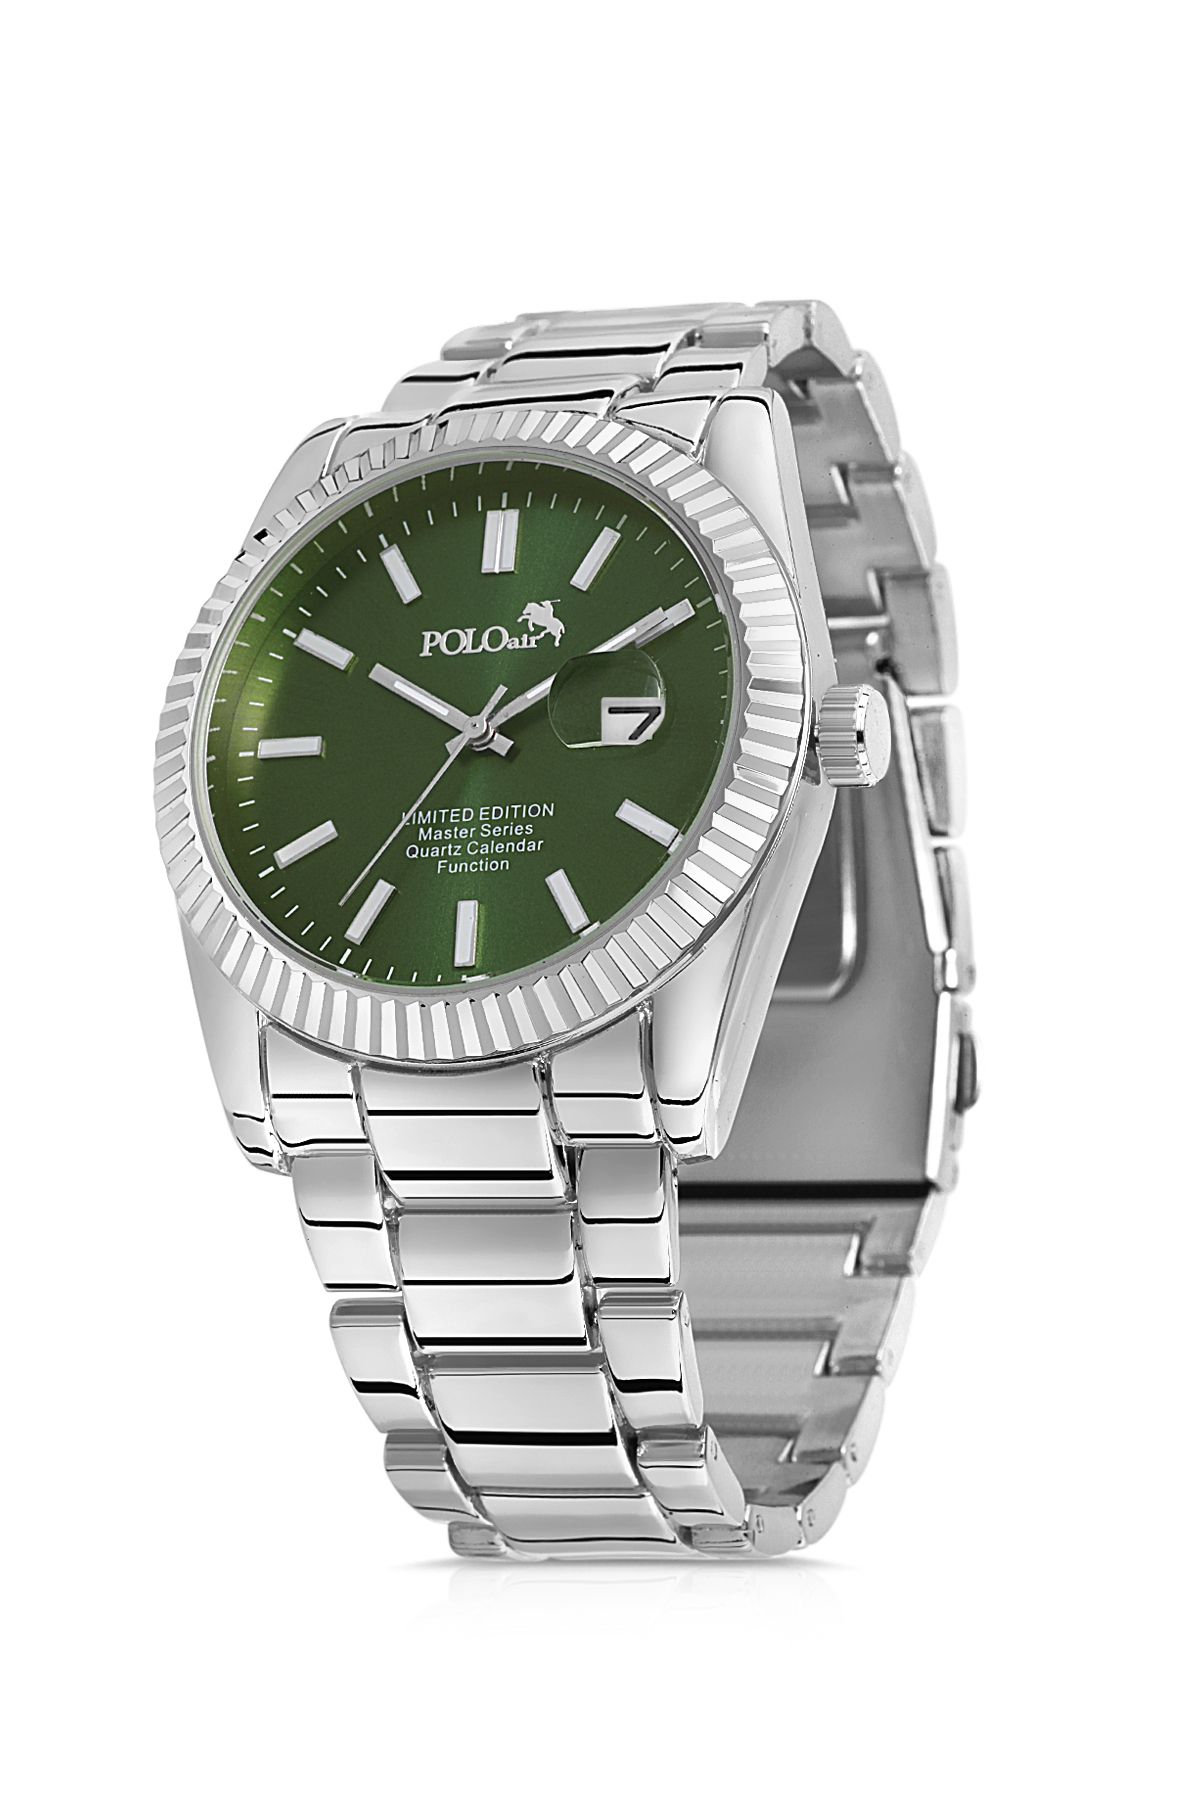 Takvim Özellikli Erkek Kol Saati Gümüş-Yeşil Renk PL-0798E12x